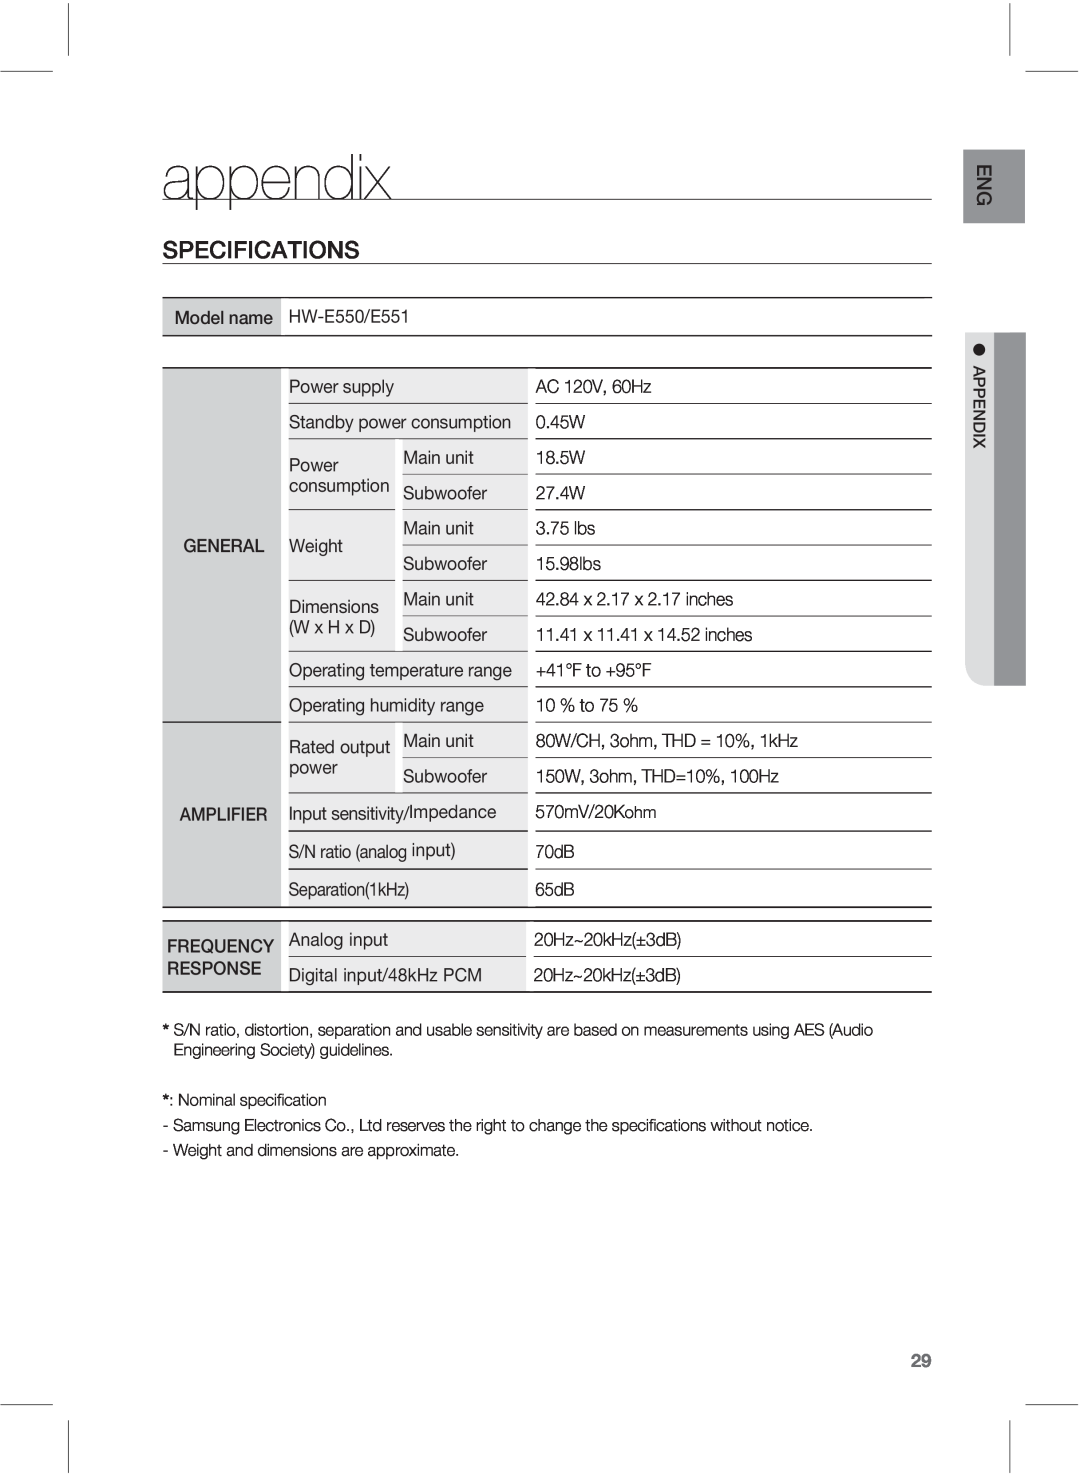 Samsung HWE550 manual appendix, 41&$**$5*0/4 